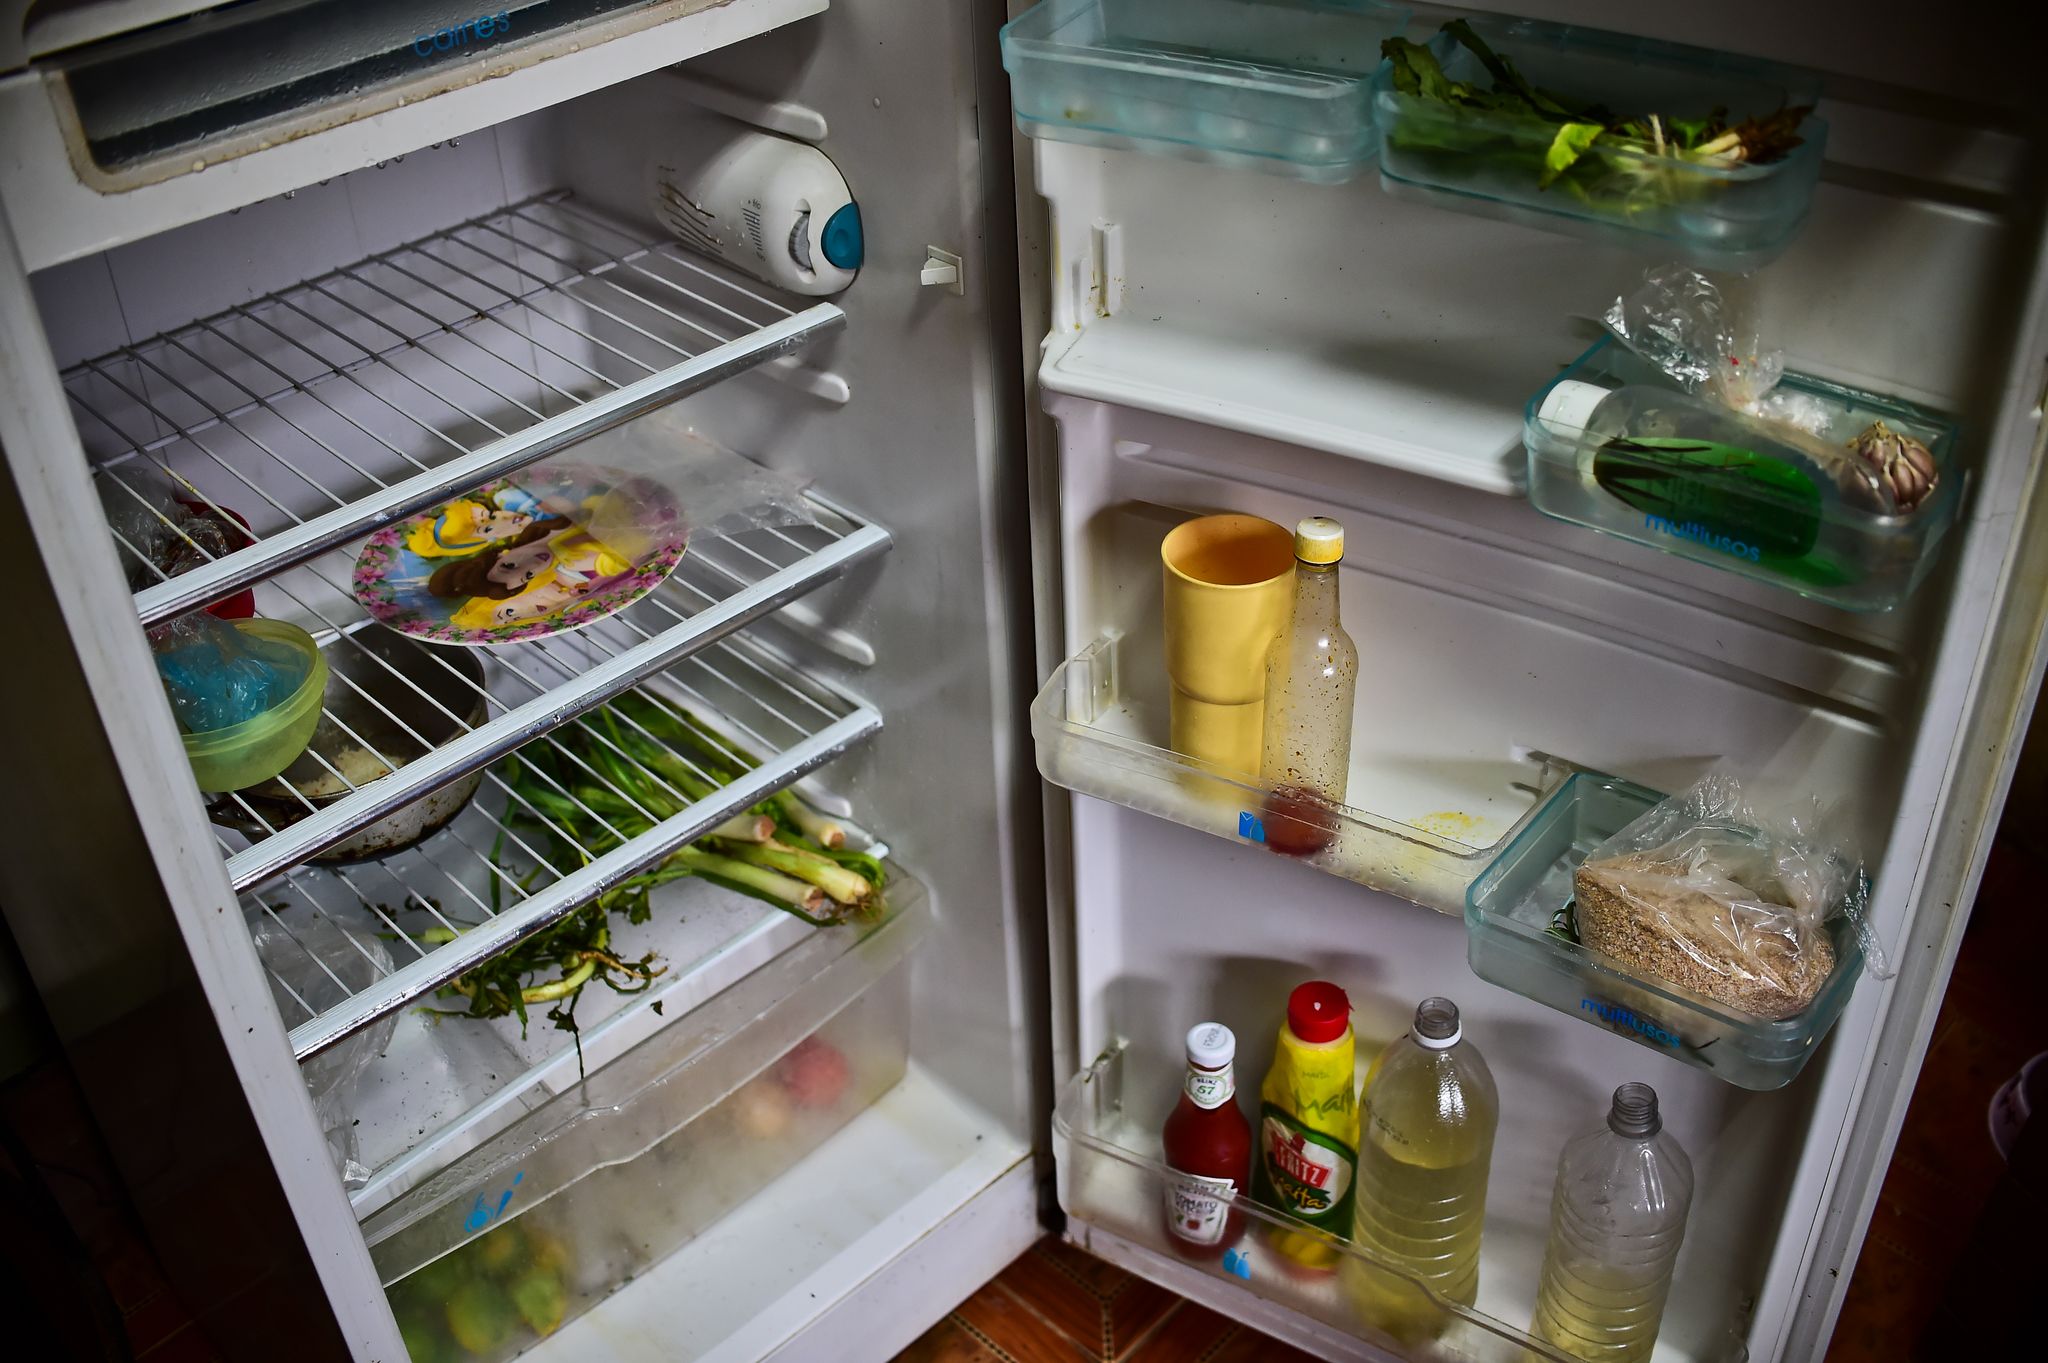 Je n'ai plus de distribution d'eau dans mon frigo, que puis-je faire ?